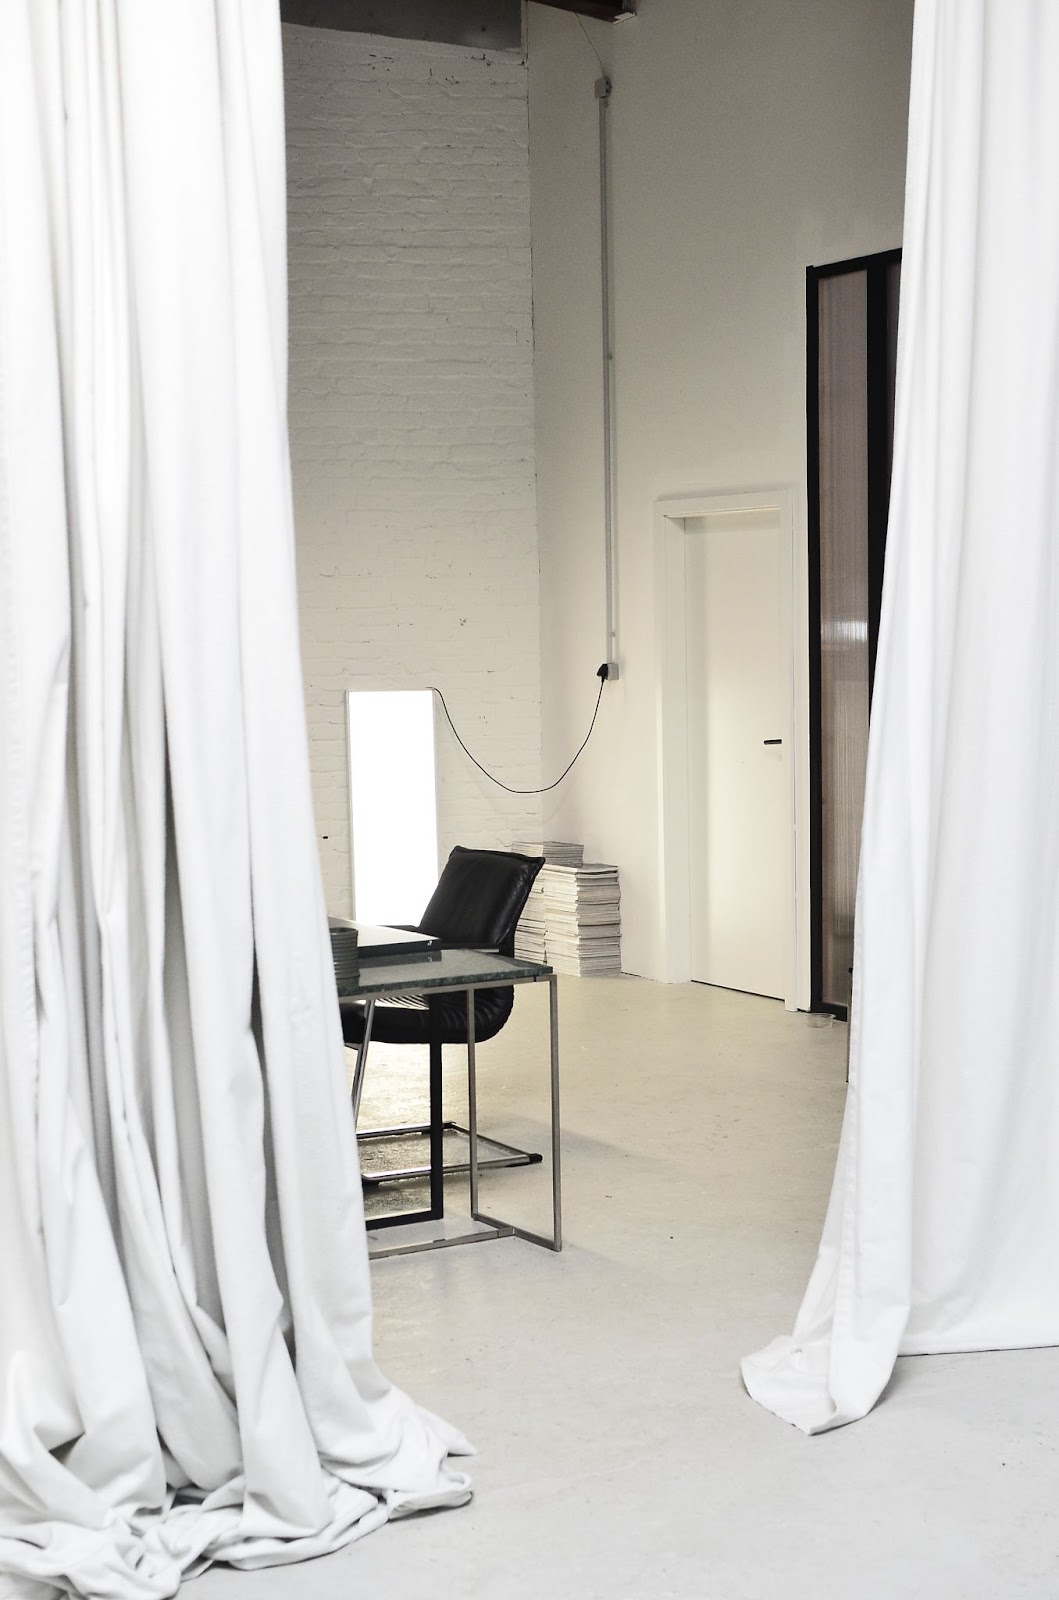 窗簾的大面積背景，整潔的畫面能夠提升自己的形象與專業度。